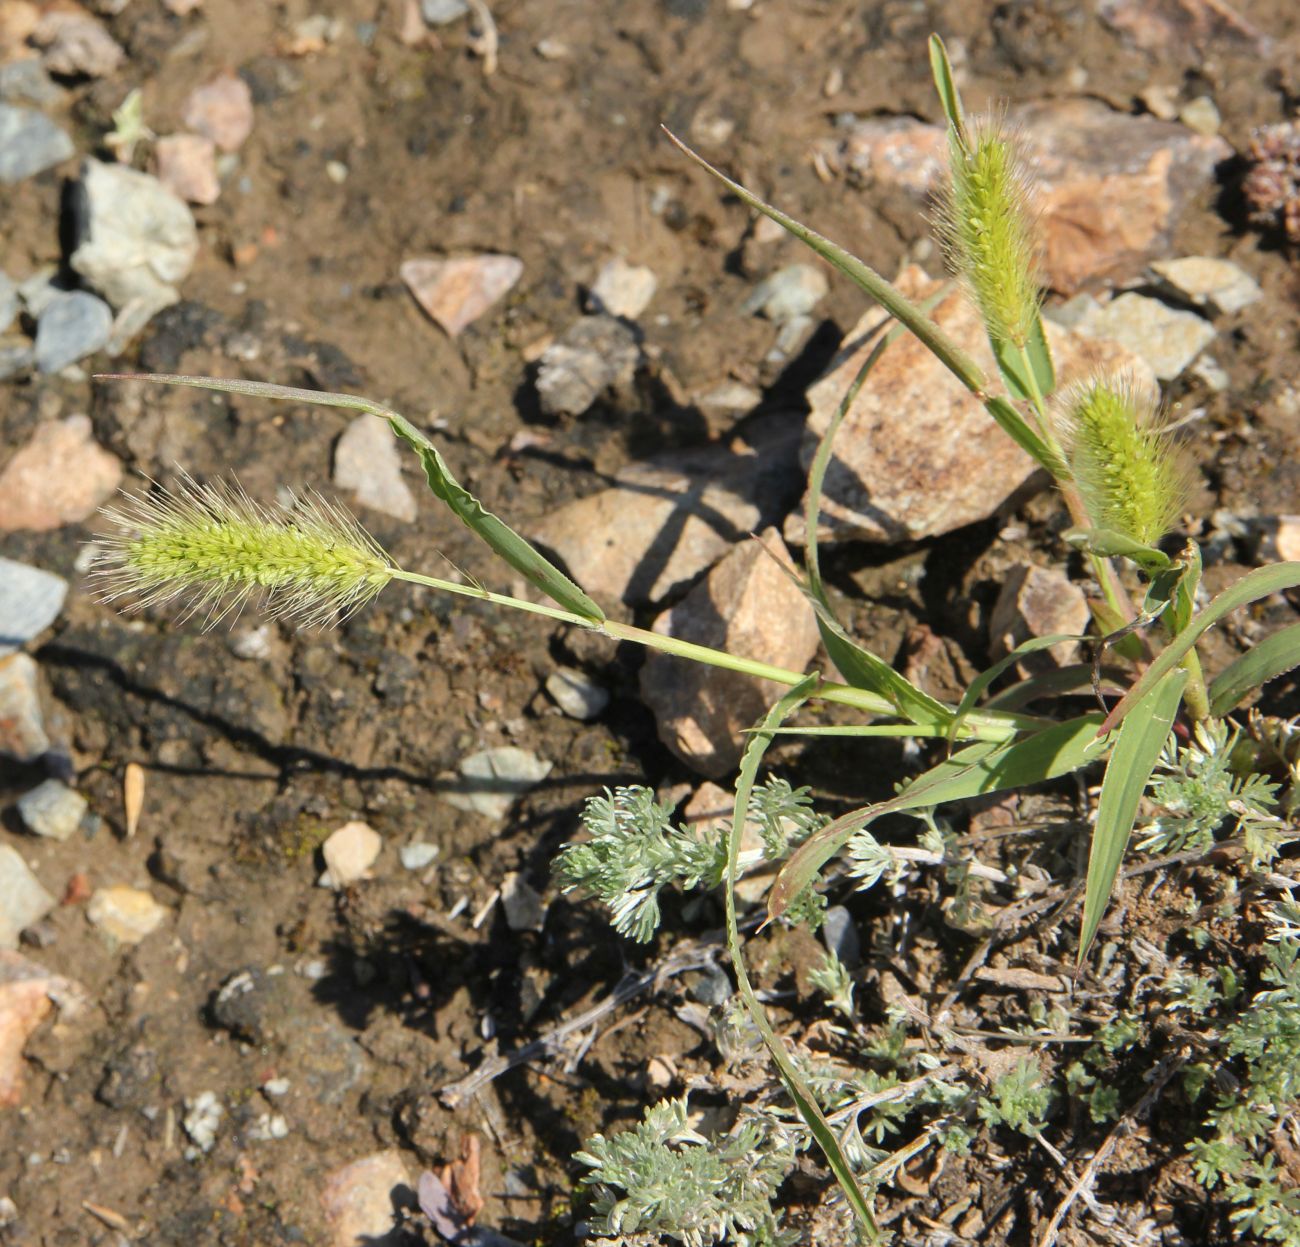 Image of genus Setaria specimen.